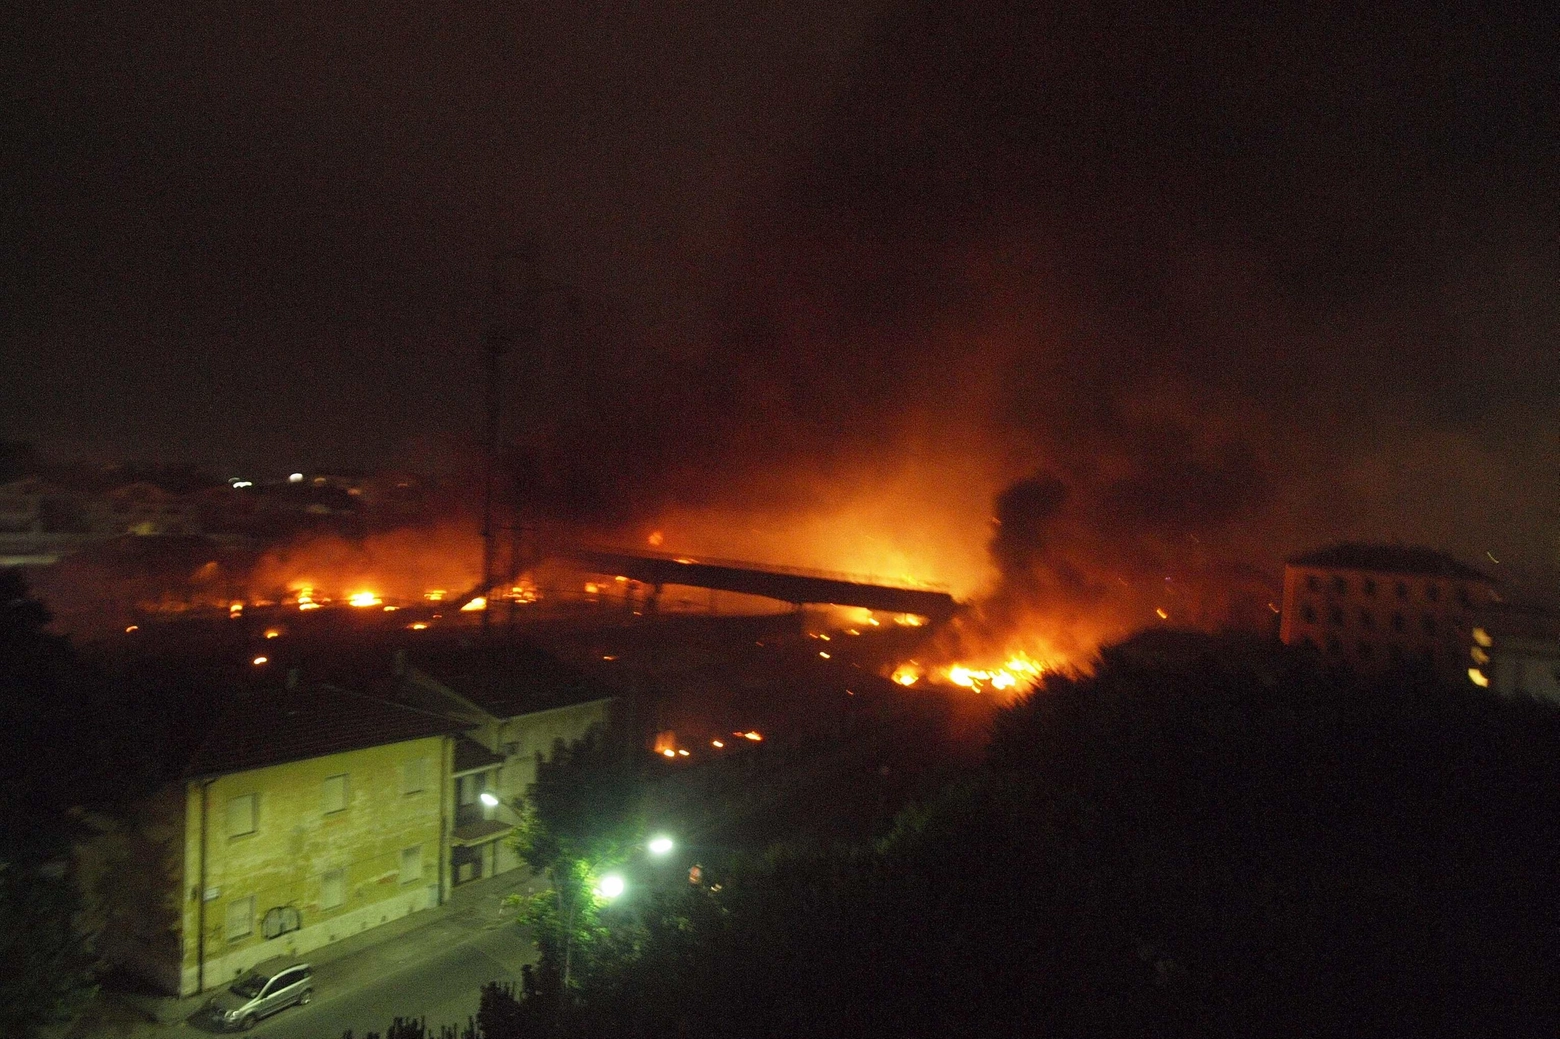 Una terrificante immagine della stazione di Viareggio in fiamme: era il 29 giugno 2009